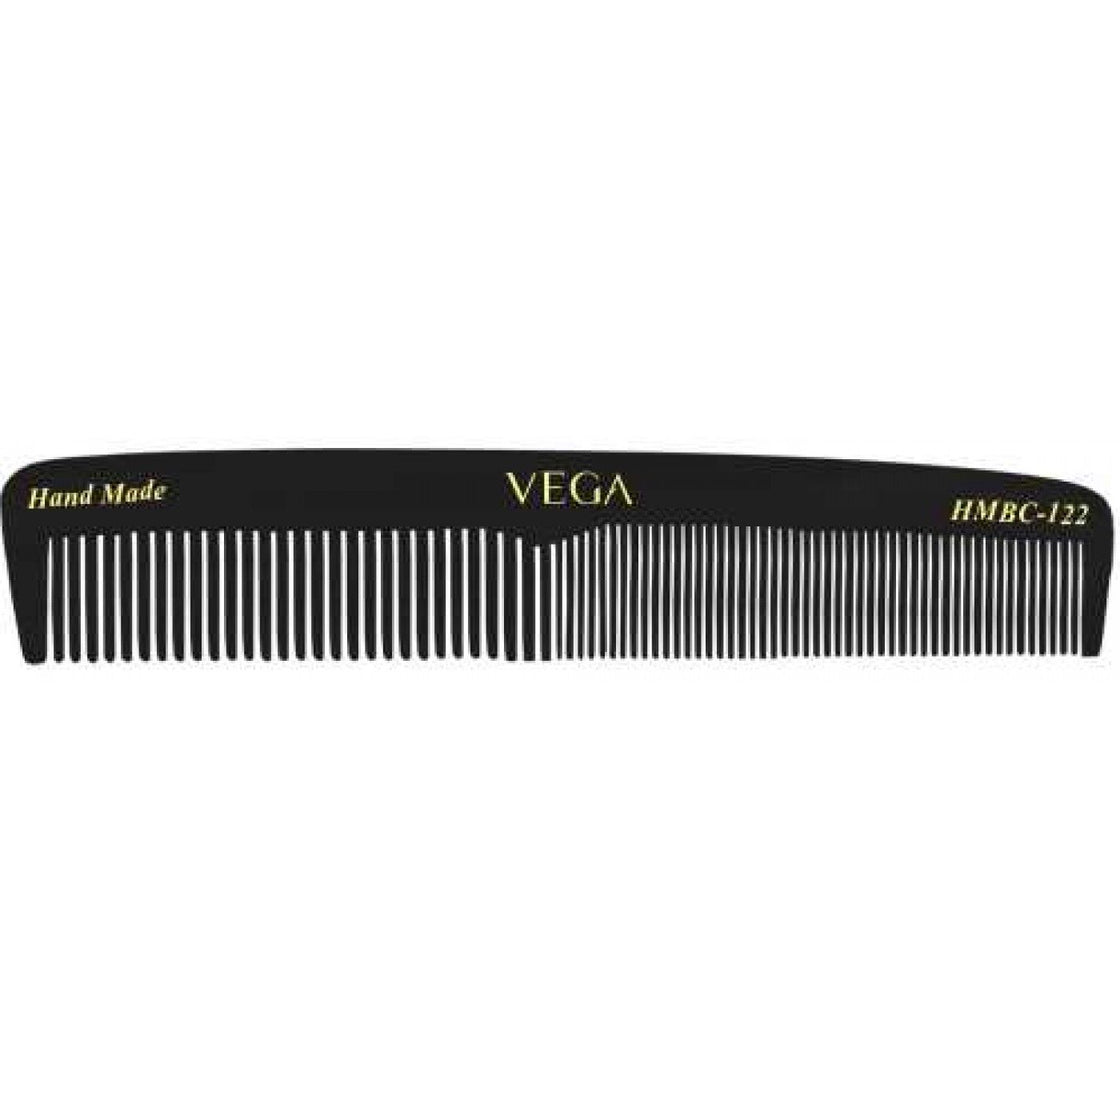 Vega Handcrafted Black Comb (Hmbc-122)